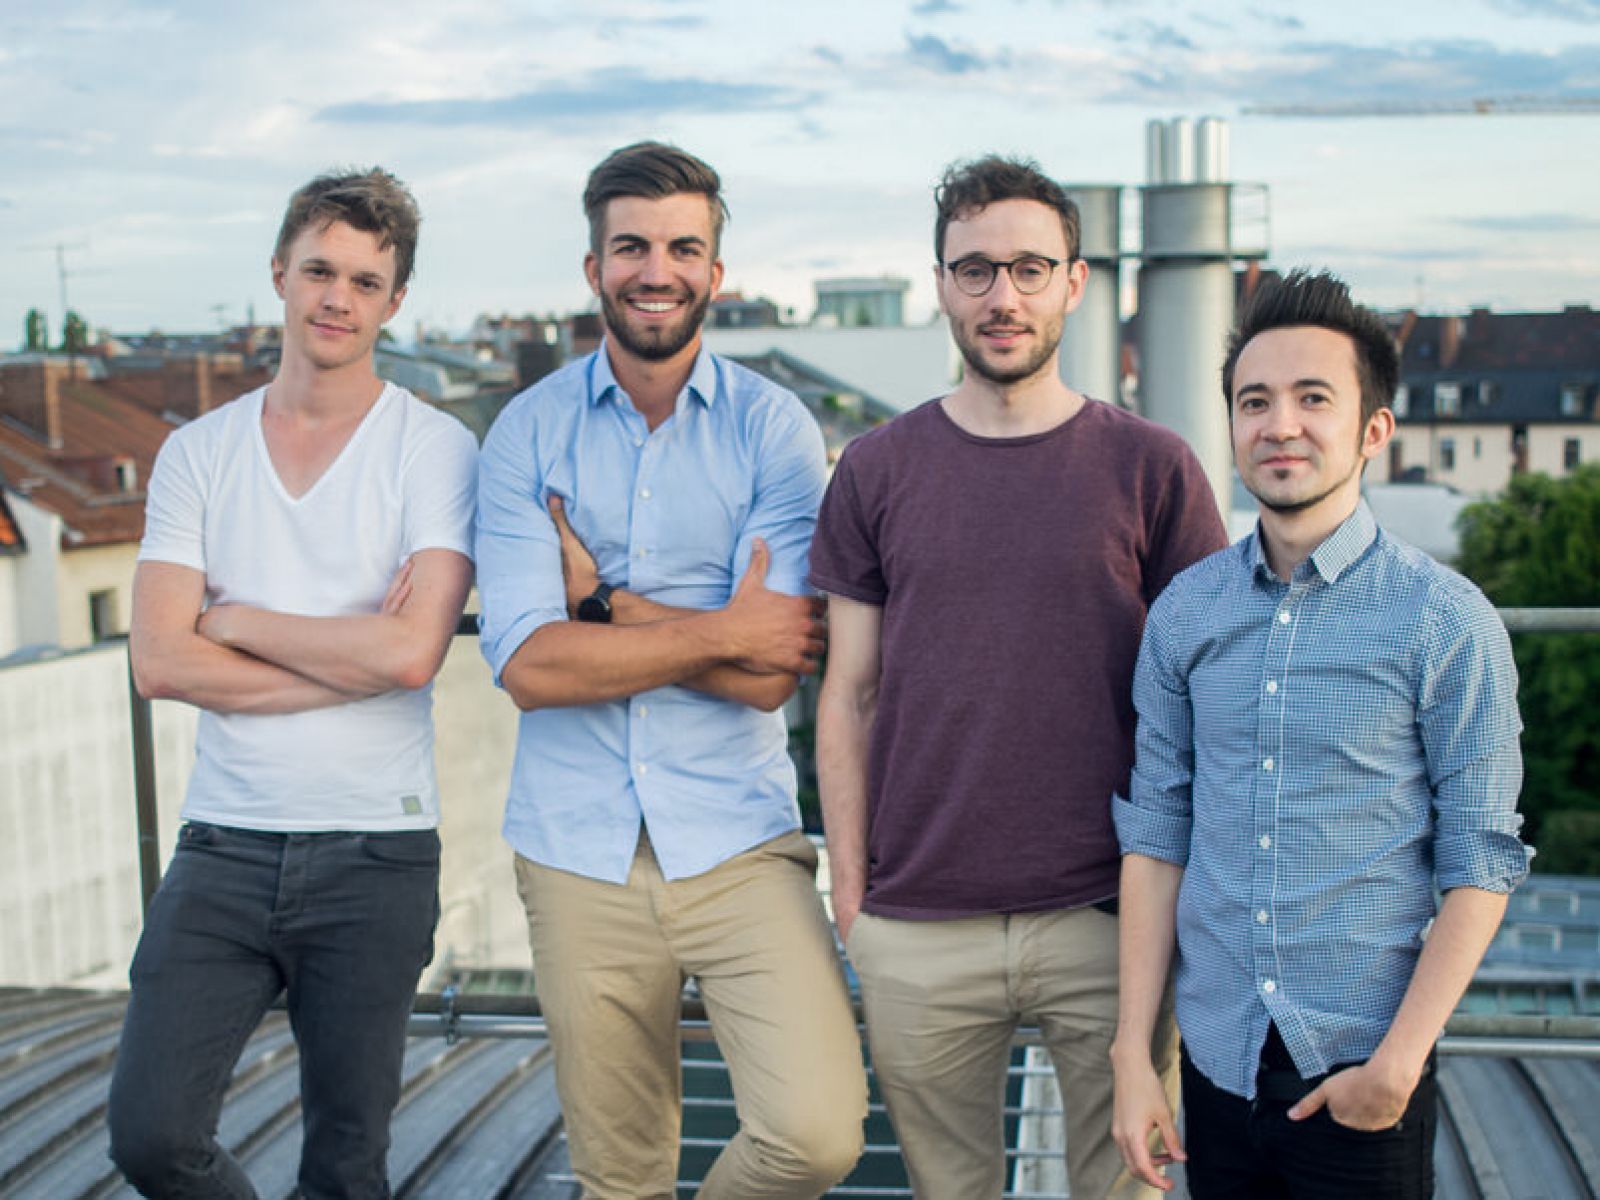 4 nhà sáng lập startup Personio